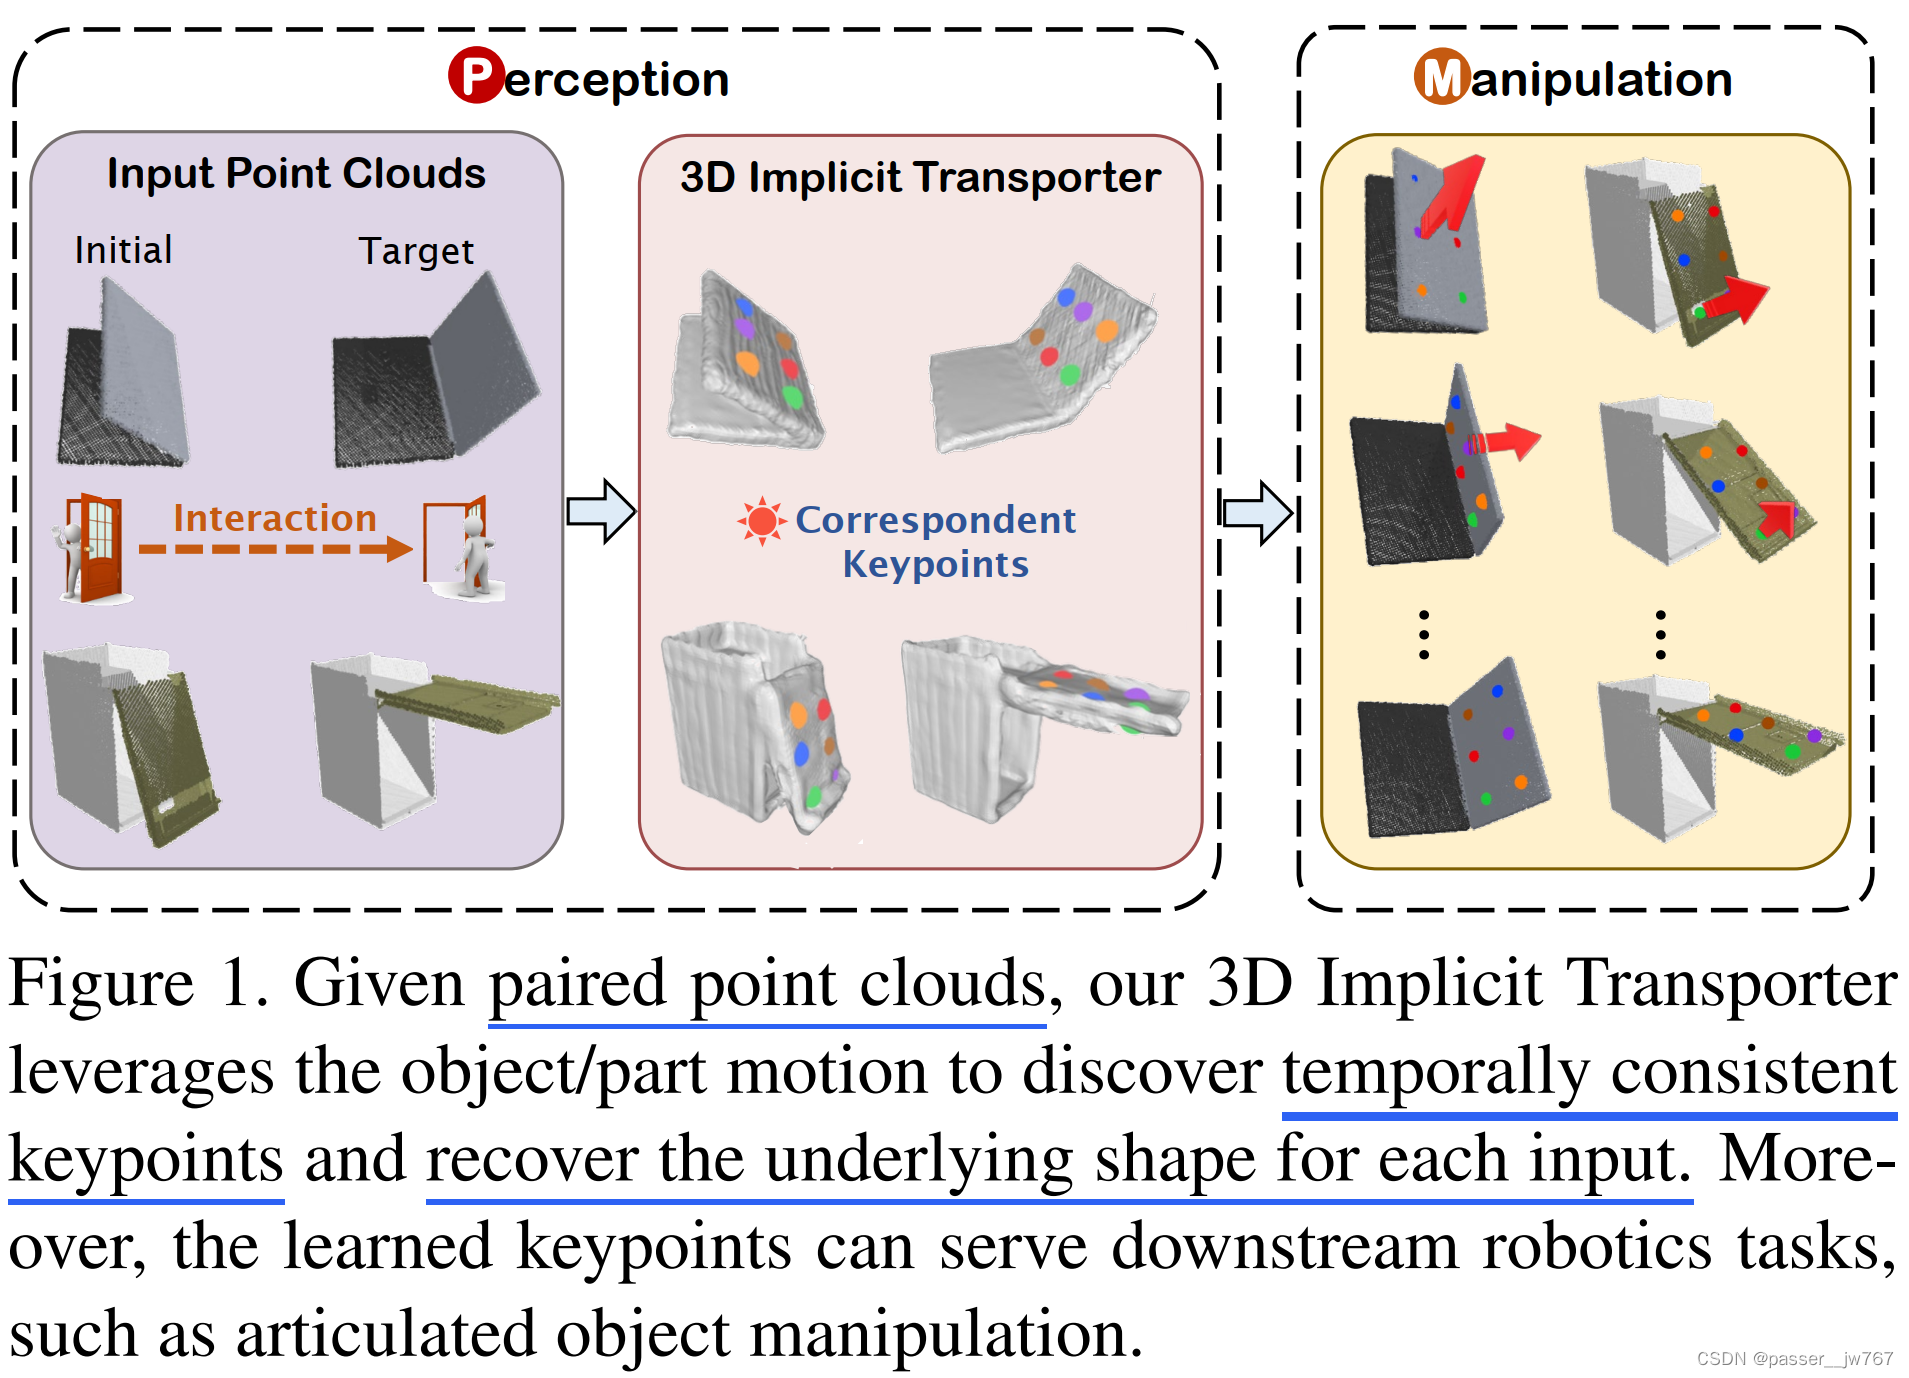 【计算机图形学】3D Implicit Transporter for Temporally Consistent Keypoint Discovery